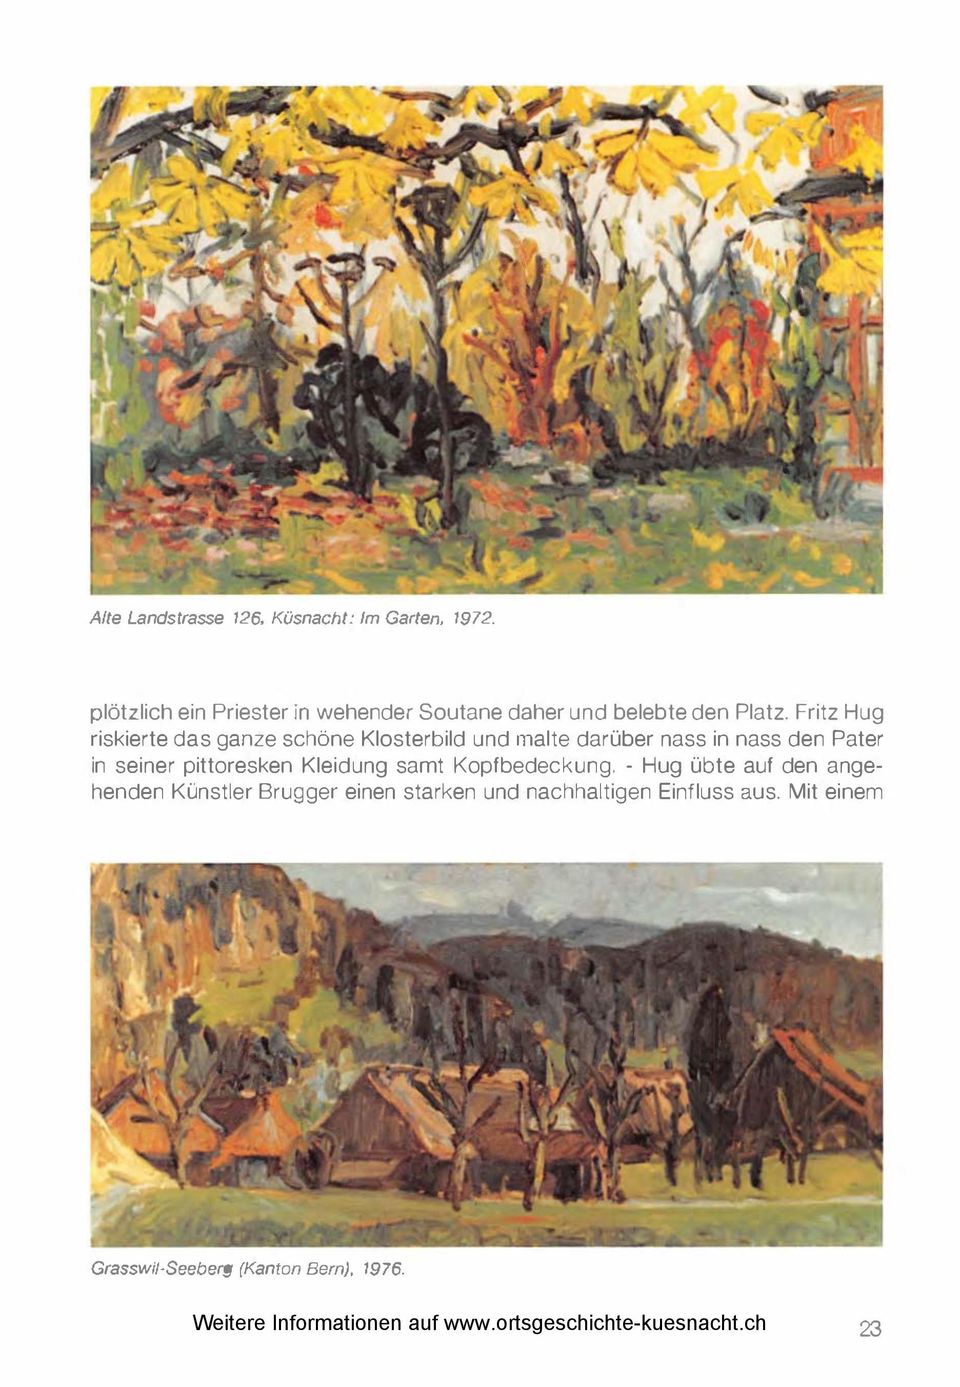 Fritz Hug riskierte das ganze schöne Klosterbild und malte darüber nass in nass den Pater in seiner pittoresken